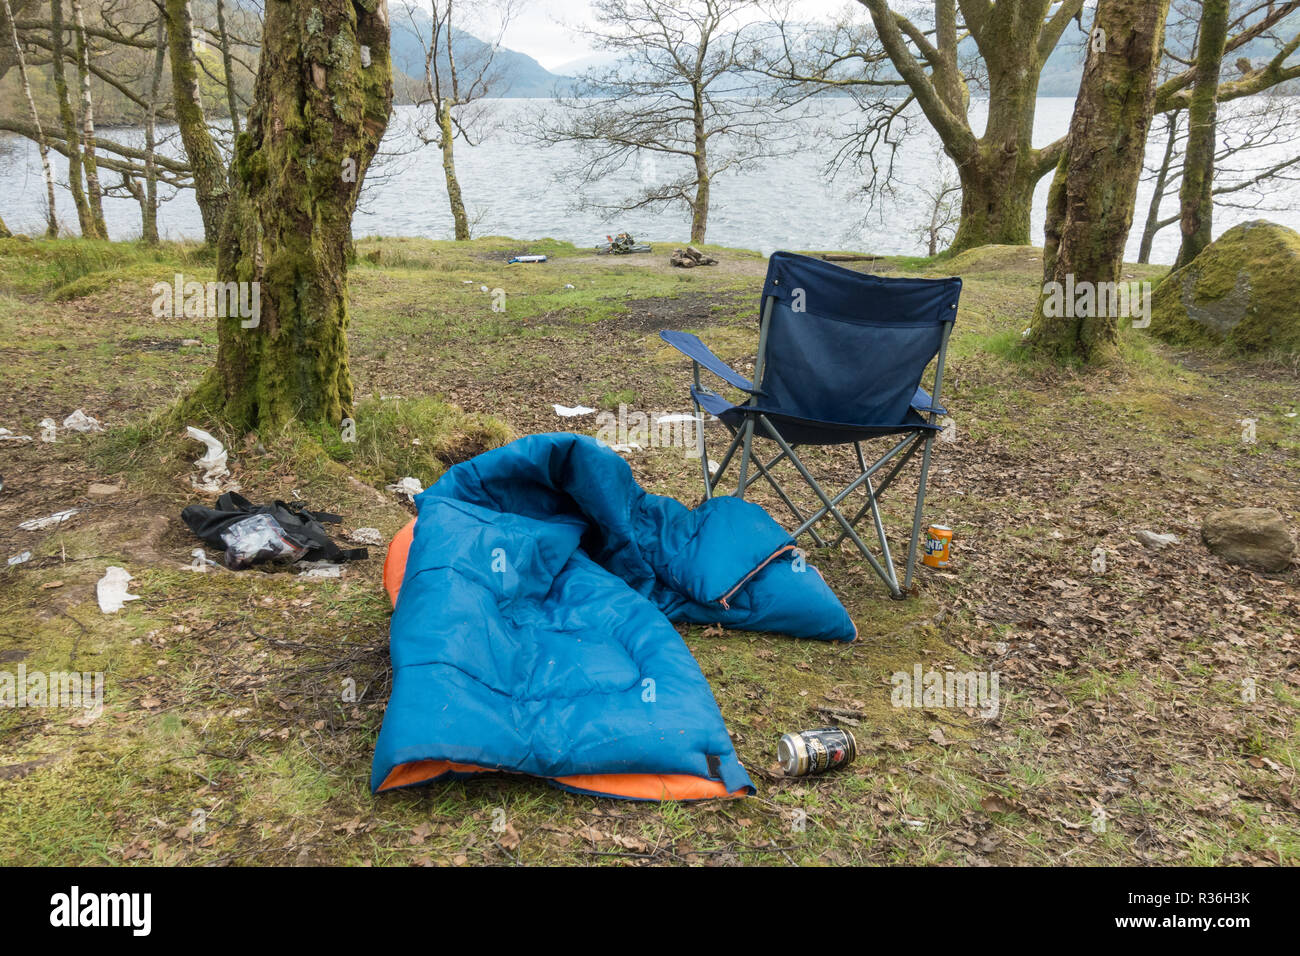 Le Loch Lomond - problèmes de litière de camping sauvage camping abandonnés - sac de couchage, de chaises, de détritus - on east shore juste en dehors de la zone de gestion de camping Banque D'Images